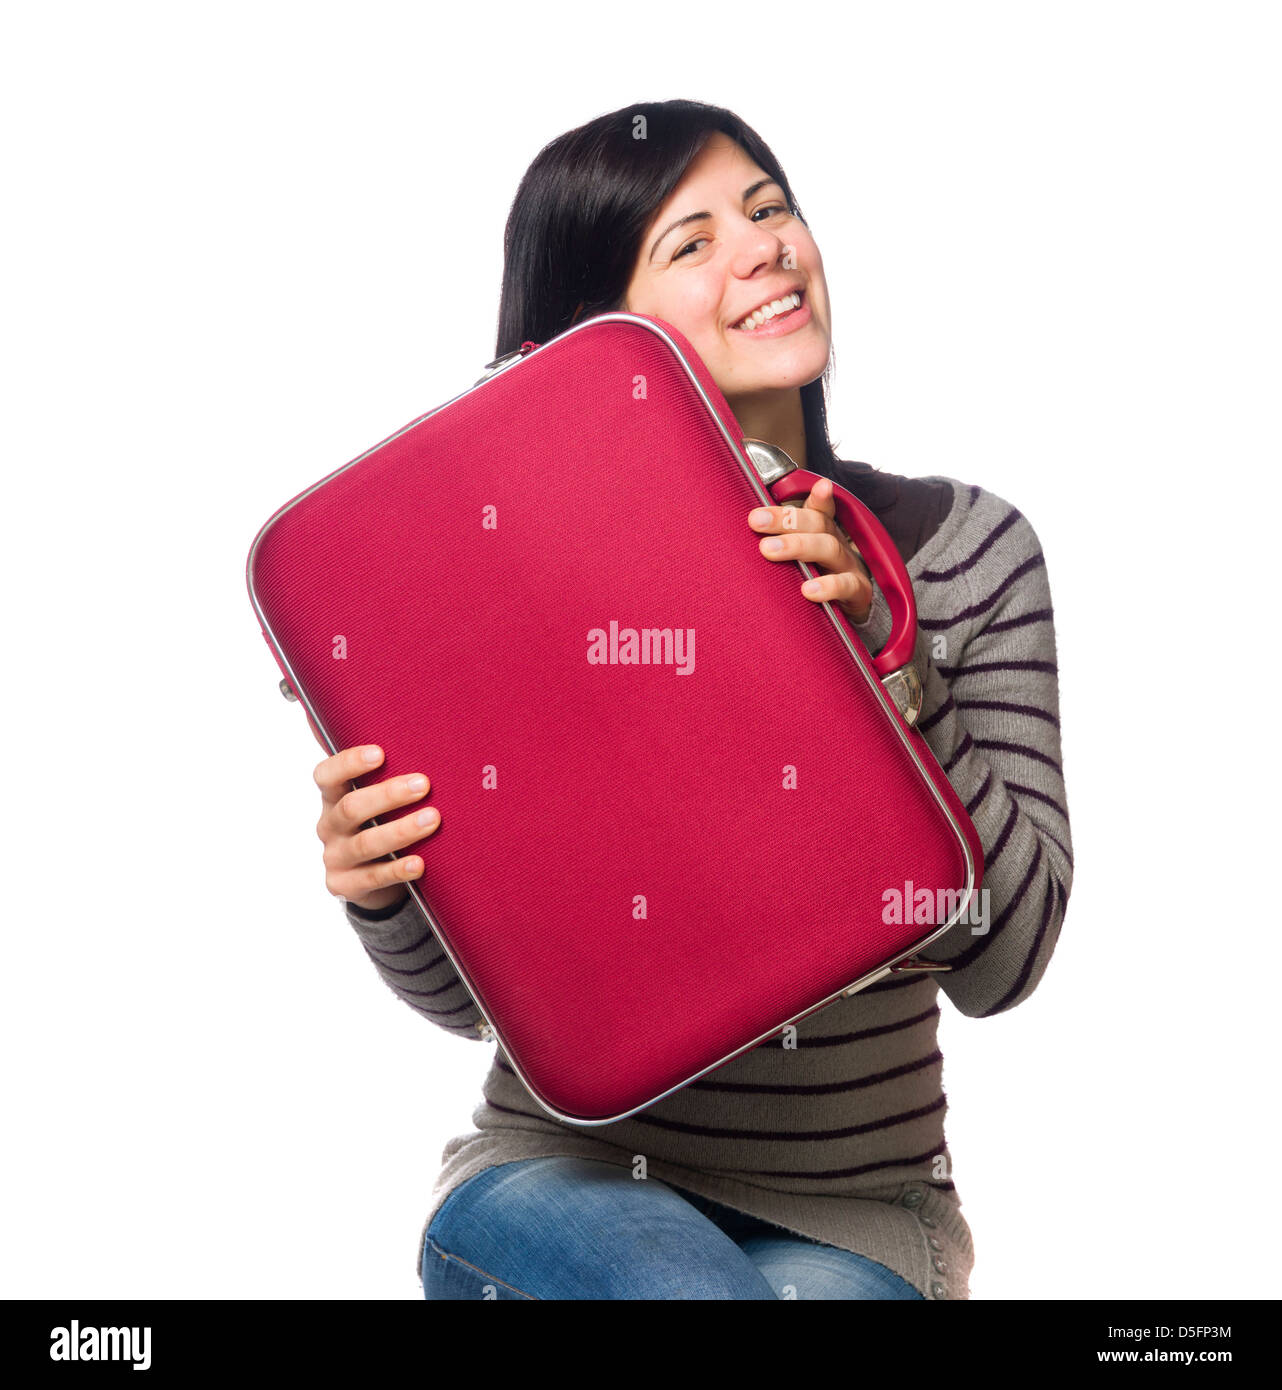 Porträt der hübsche junge Frau mit einem roten Koffer isoliert auf weißem Hintergrund Stockfoto